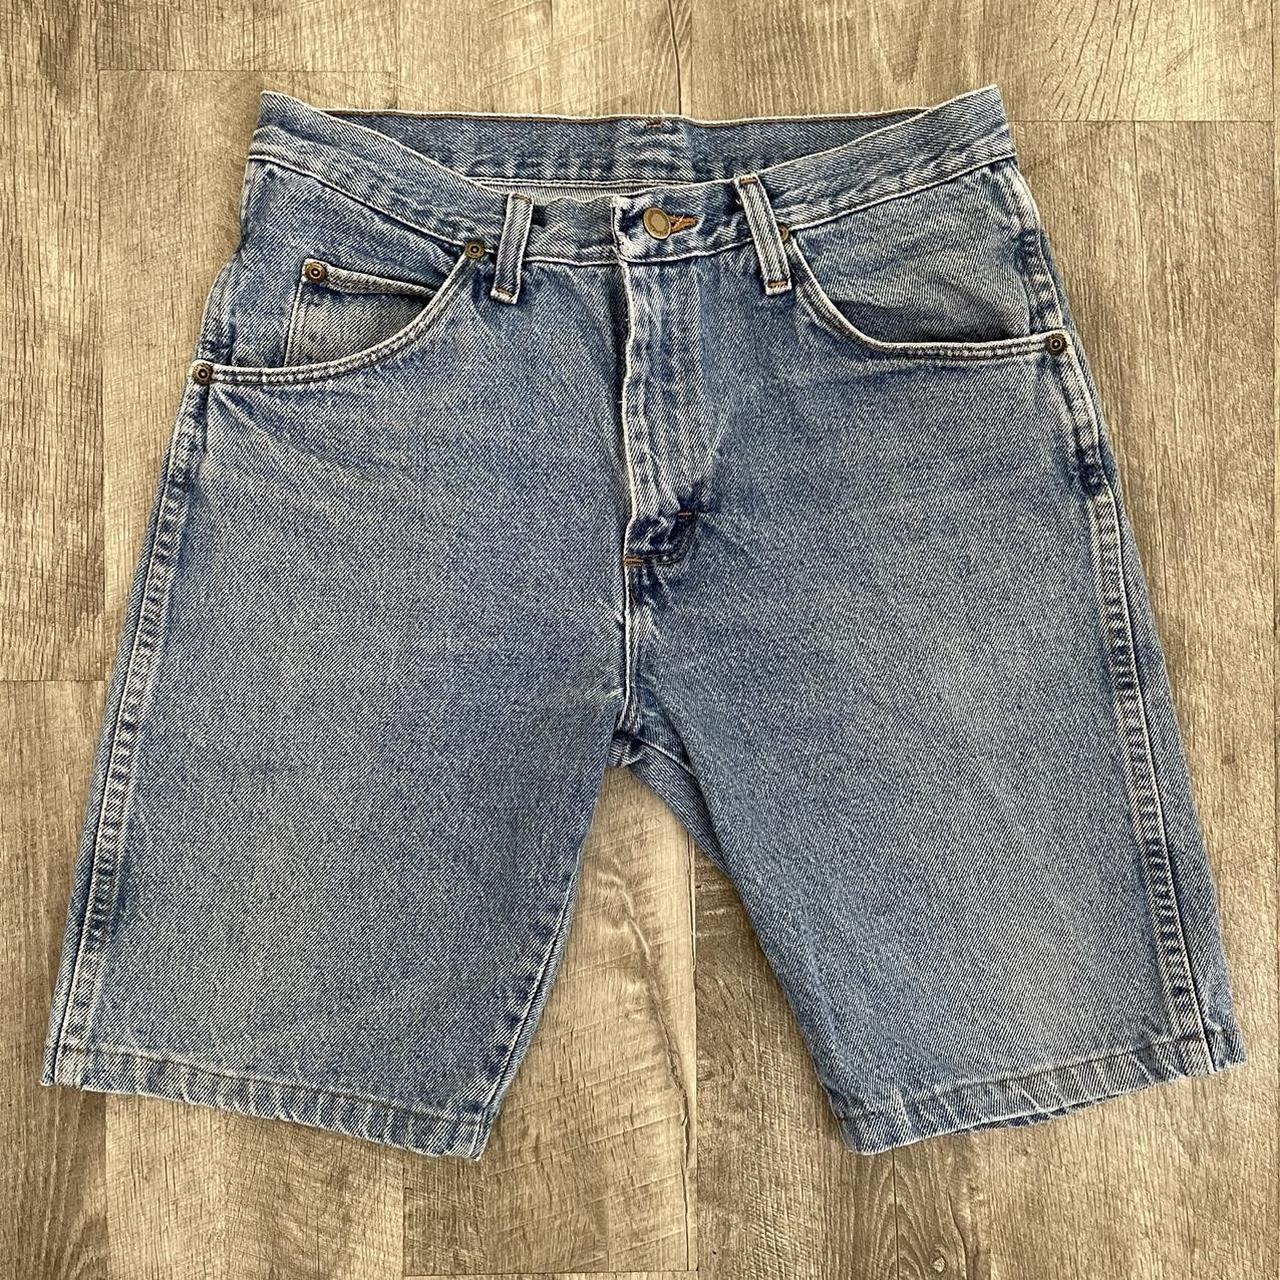 Vintage 90’s Wrangler Shorts 30 x 30 Great... - Depop